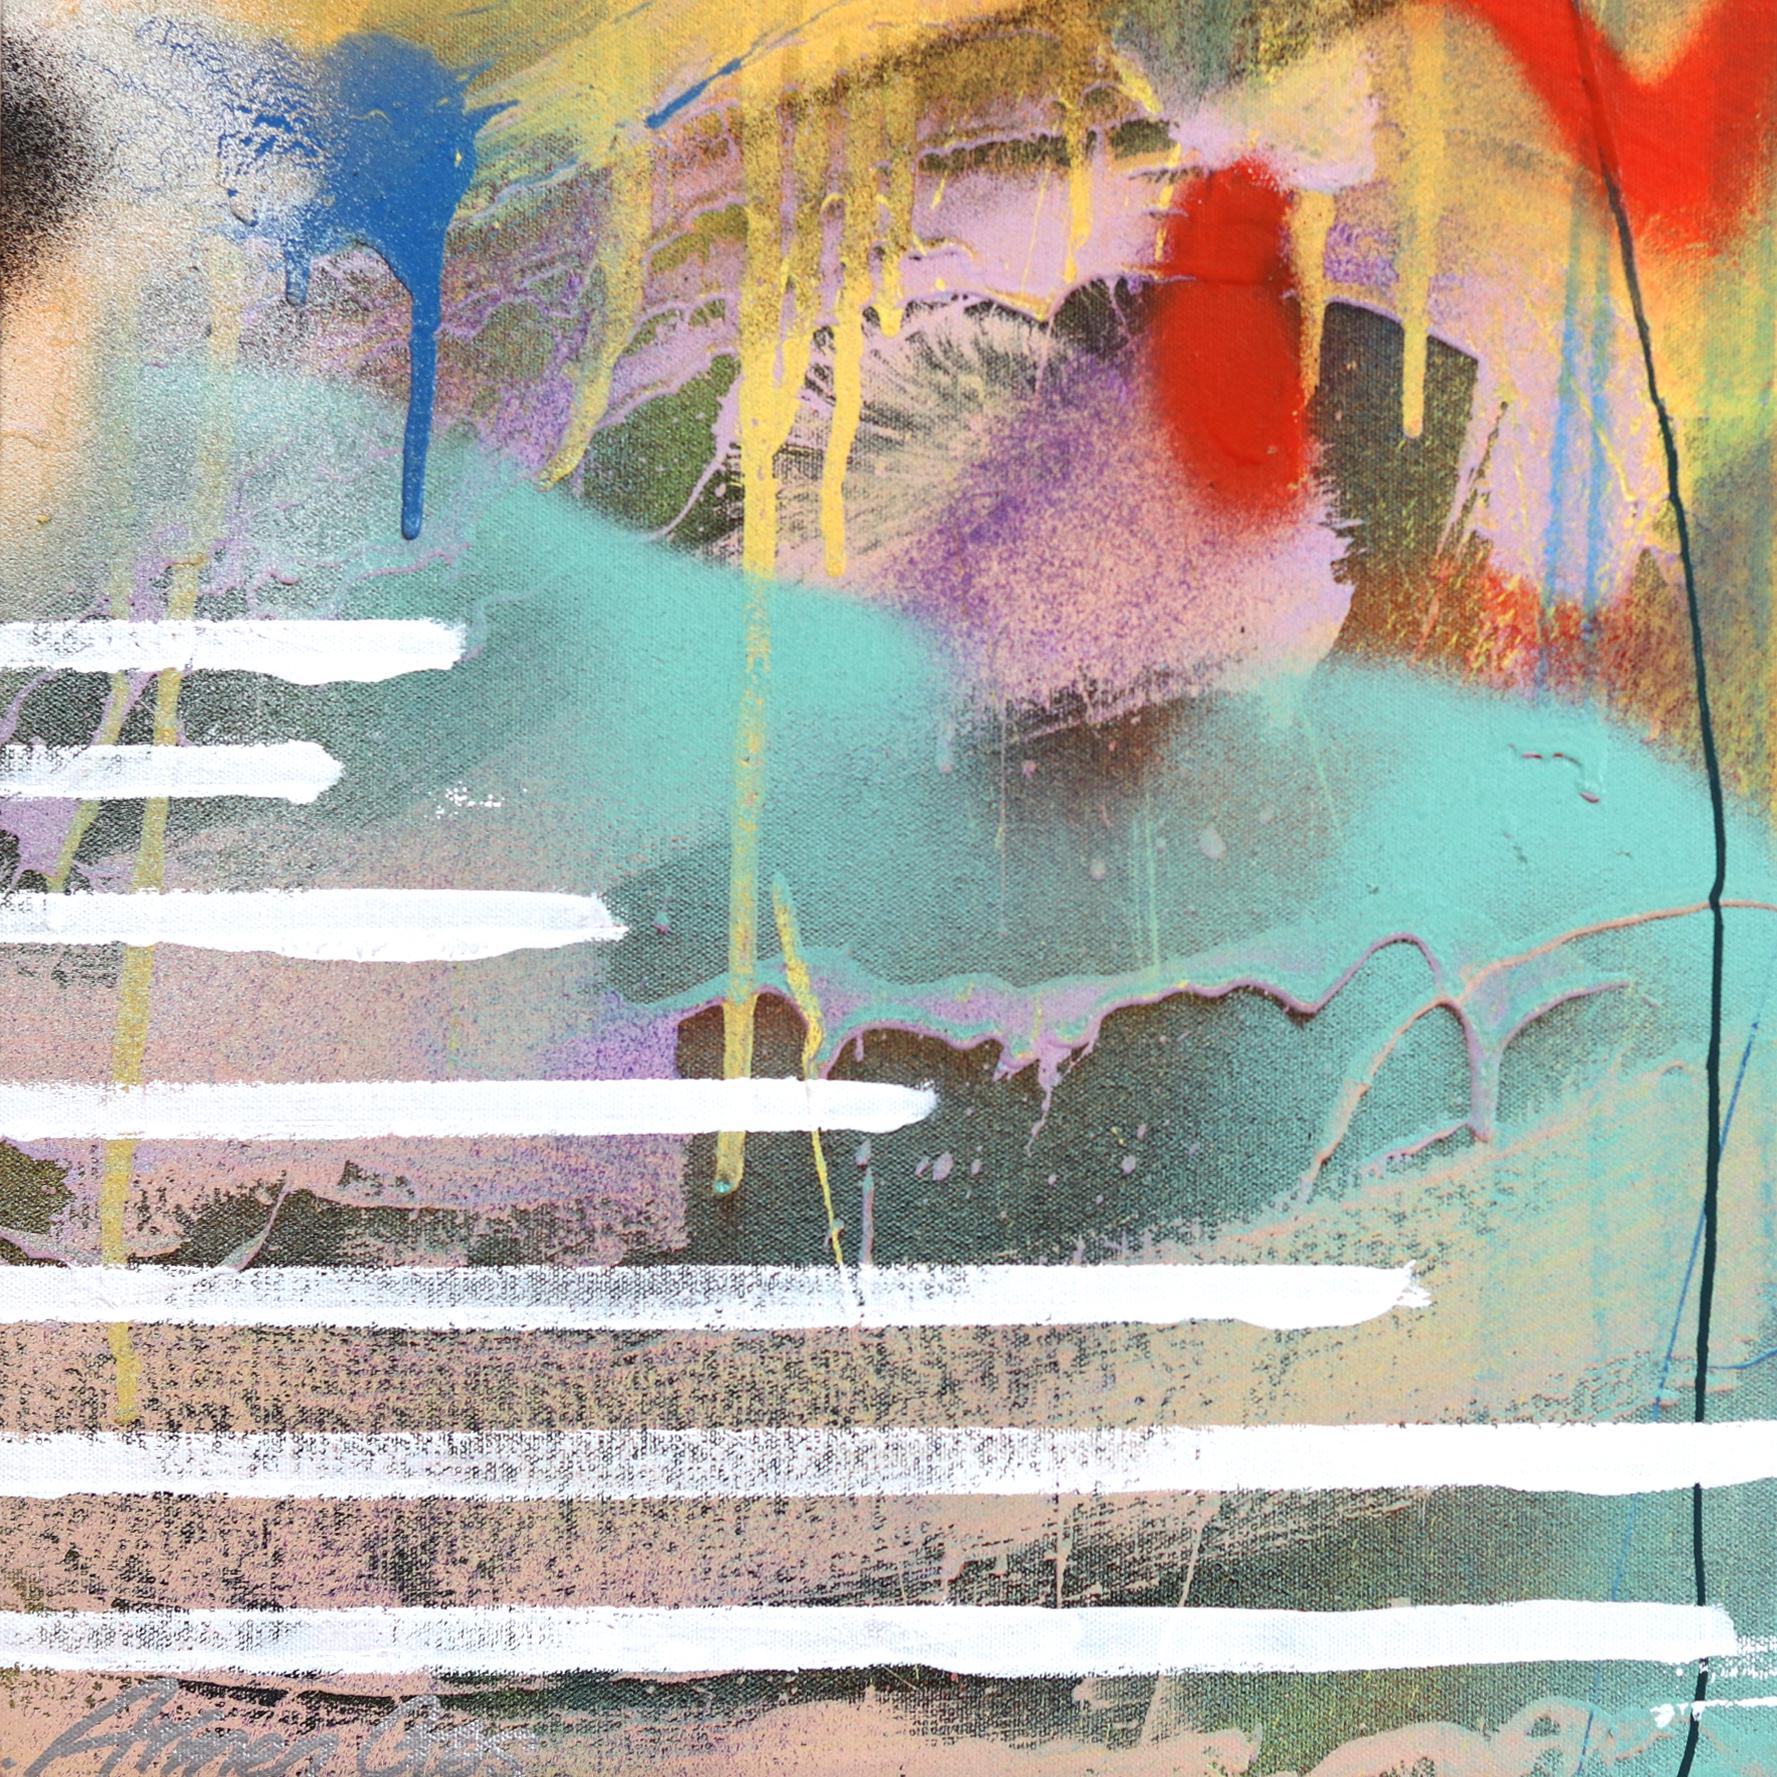 Capturant le mouvement à la peinture acrylique, Armen Ges expérimente les illusions d'optique et la perspective dans ses œuvres pop art originales. Pour créer ces visuels intrigants, Ges utilise des techniques gestuelles traditionnelles combinées à